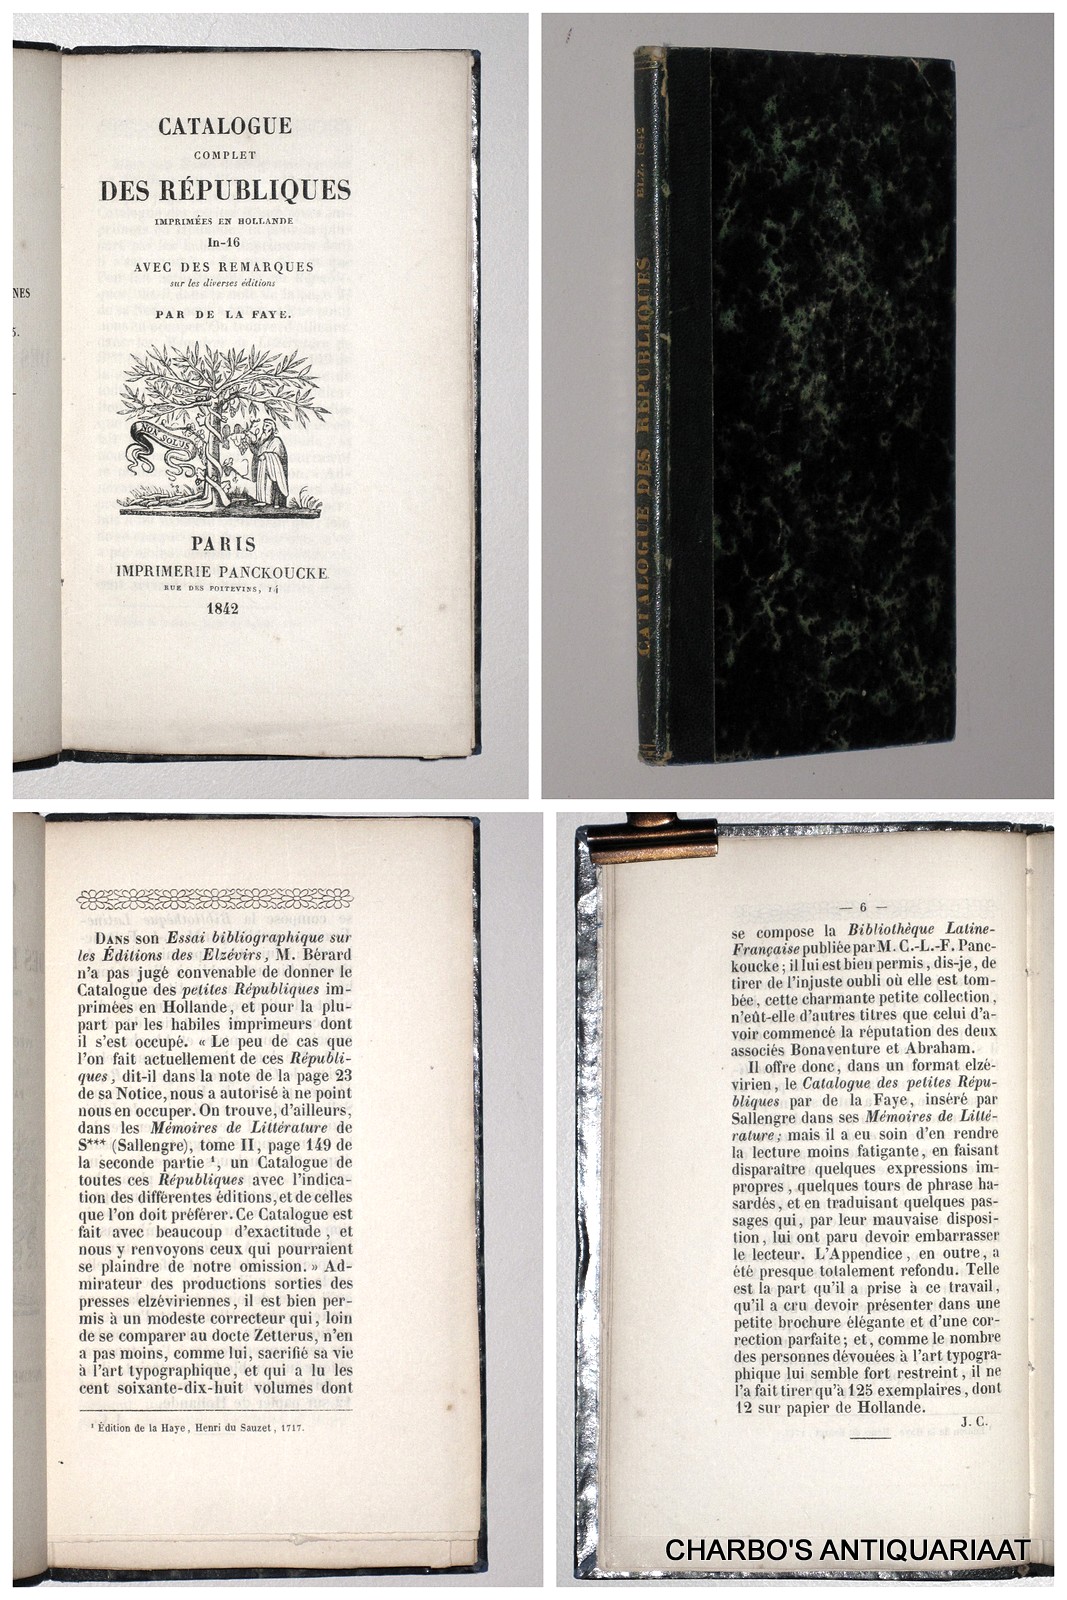 LA FAYE, [P.B.] DE, -  Catalogue complet des Rpubliques imprimes en Hollande: In-16 avec des remarques sur les diverses ditions.